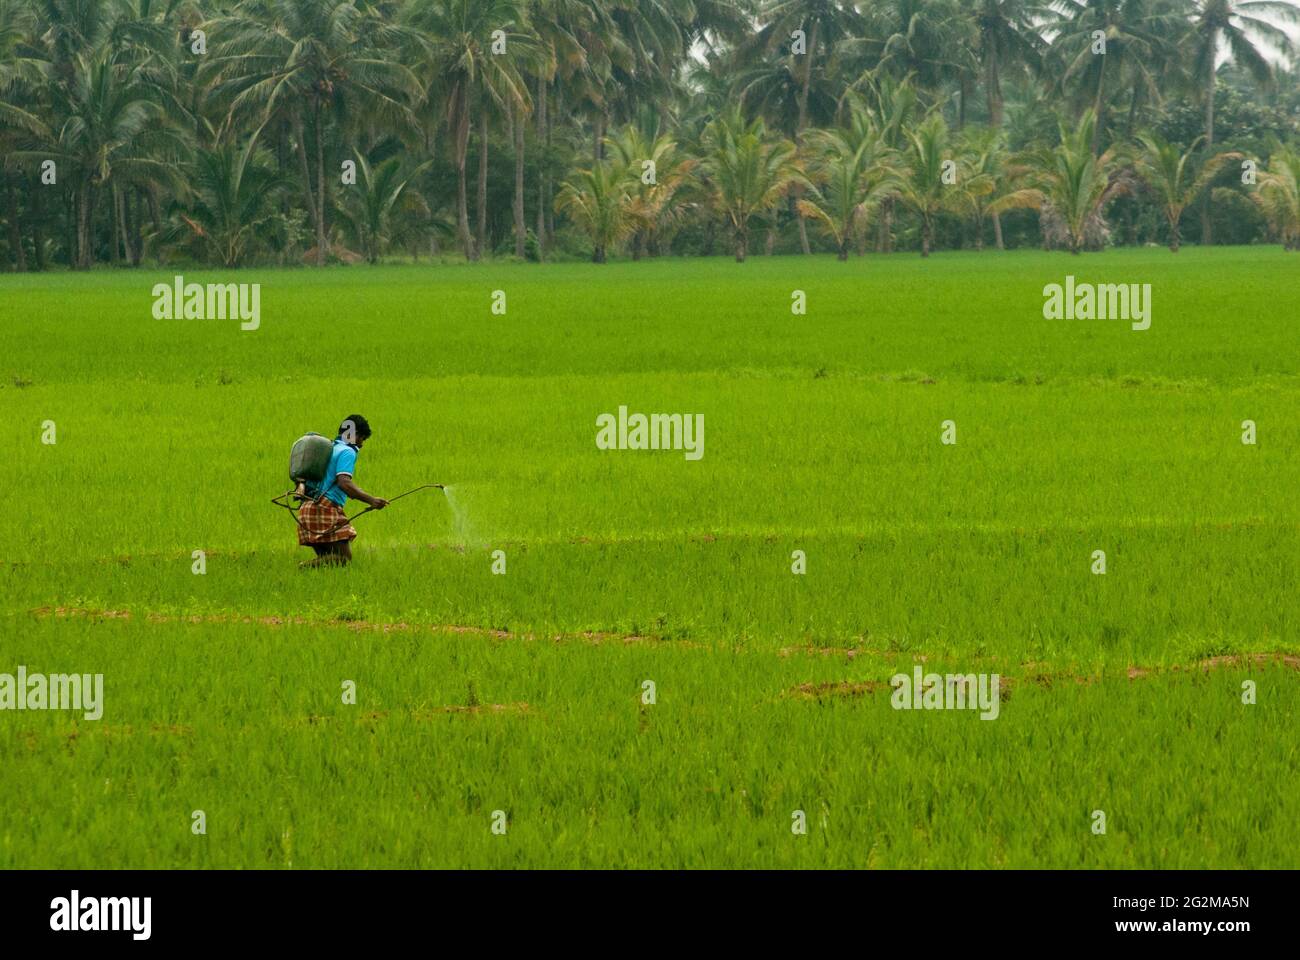 un homme vaporise un produit chimique liquide sur le champ de paddy agricole pour tuer les insectes Banque D'Images